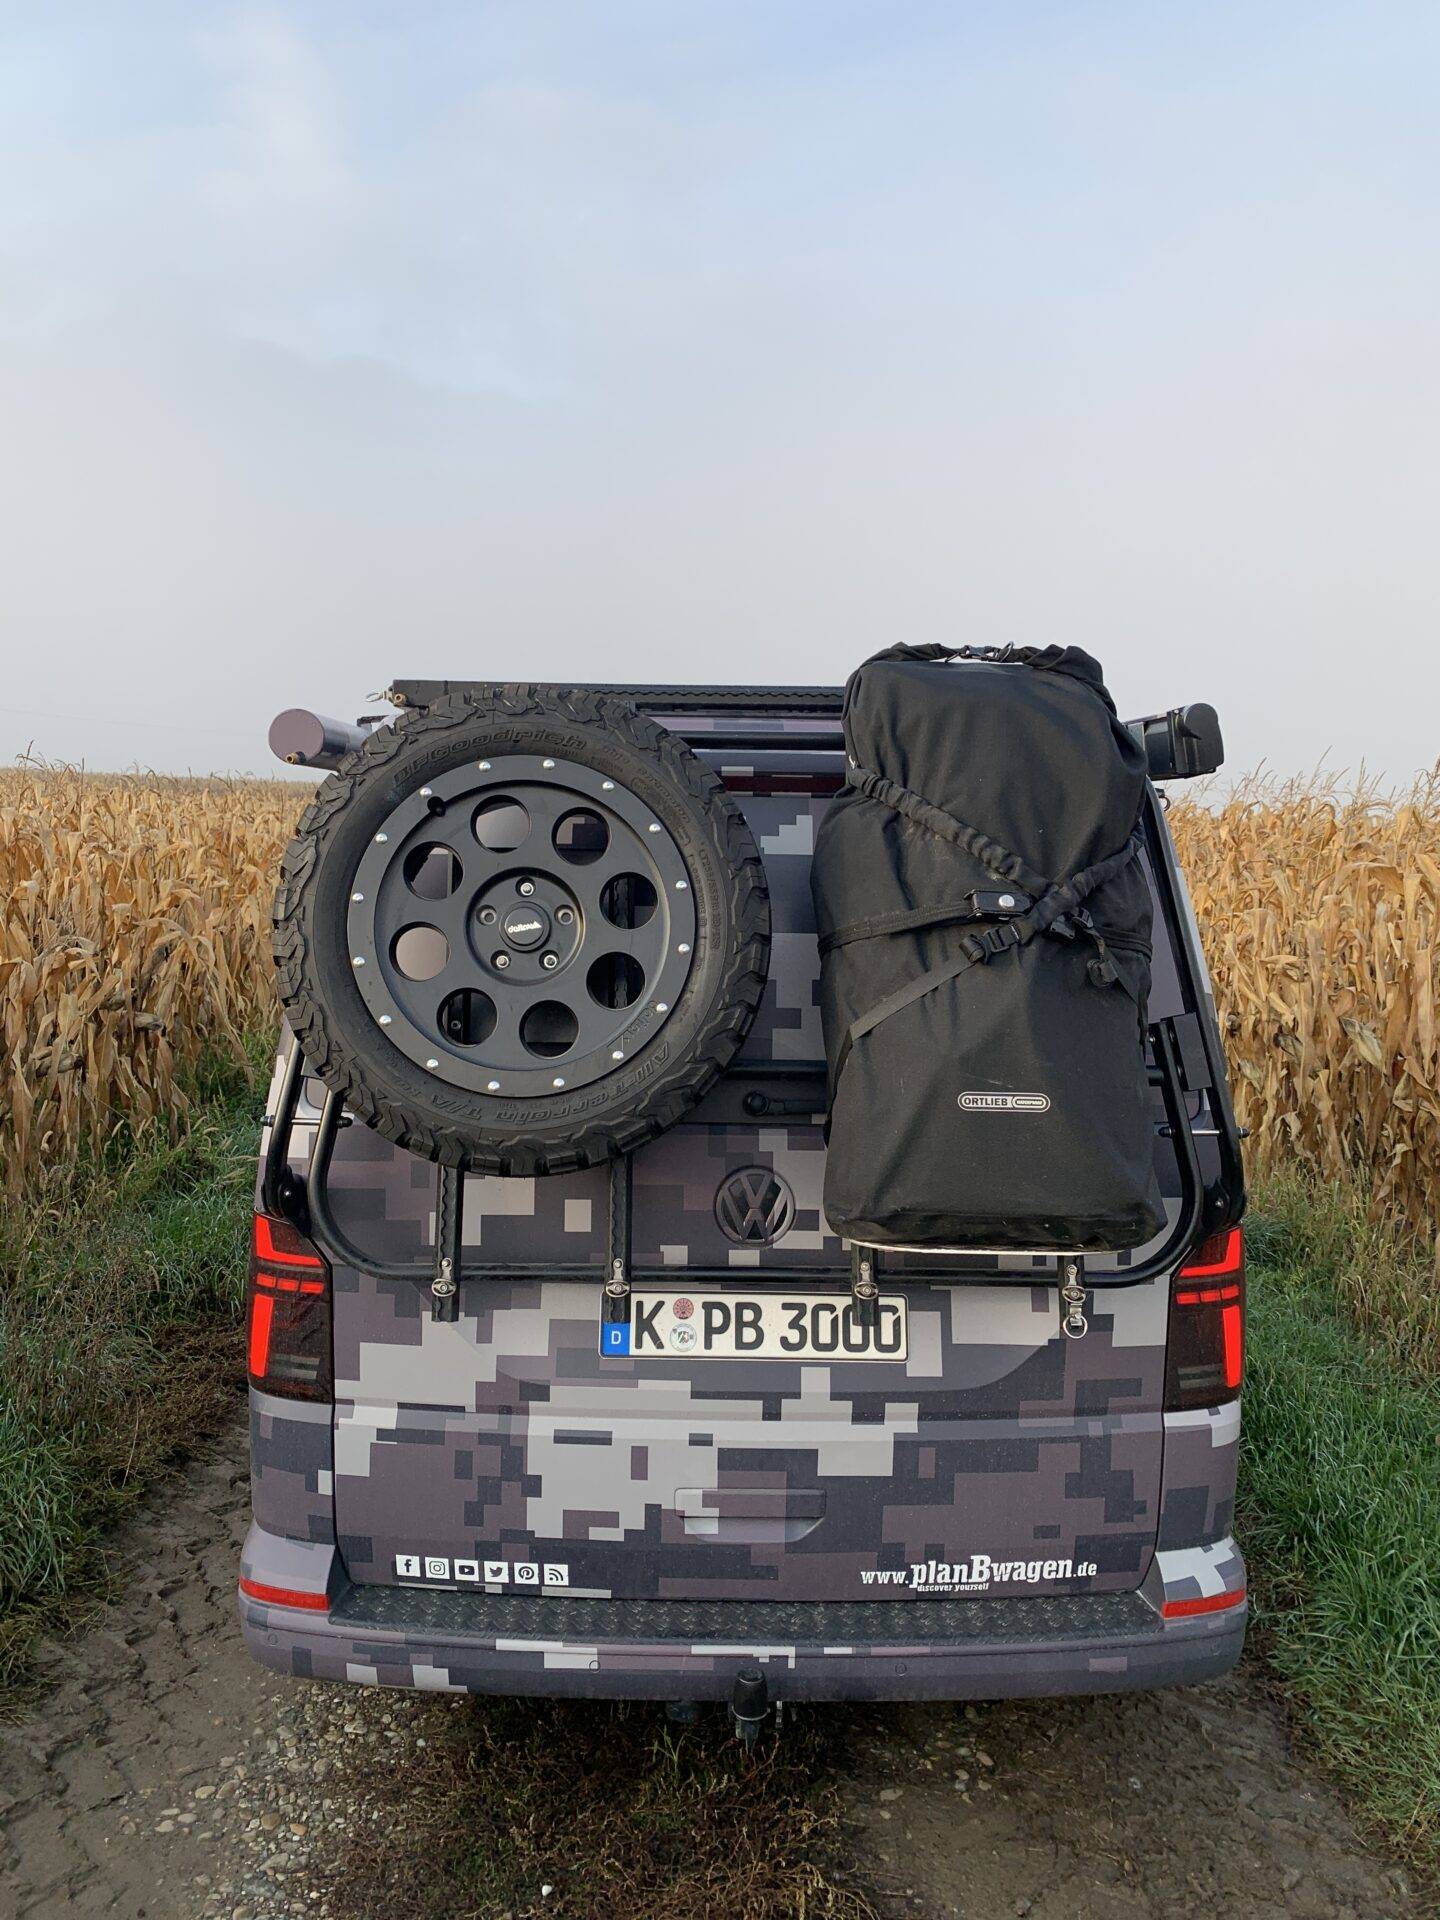 Heck mit delta4x4 Klassik B + Ortliebtasche des planBwagen, VW T6.1 SpaceCamper in camouflage